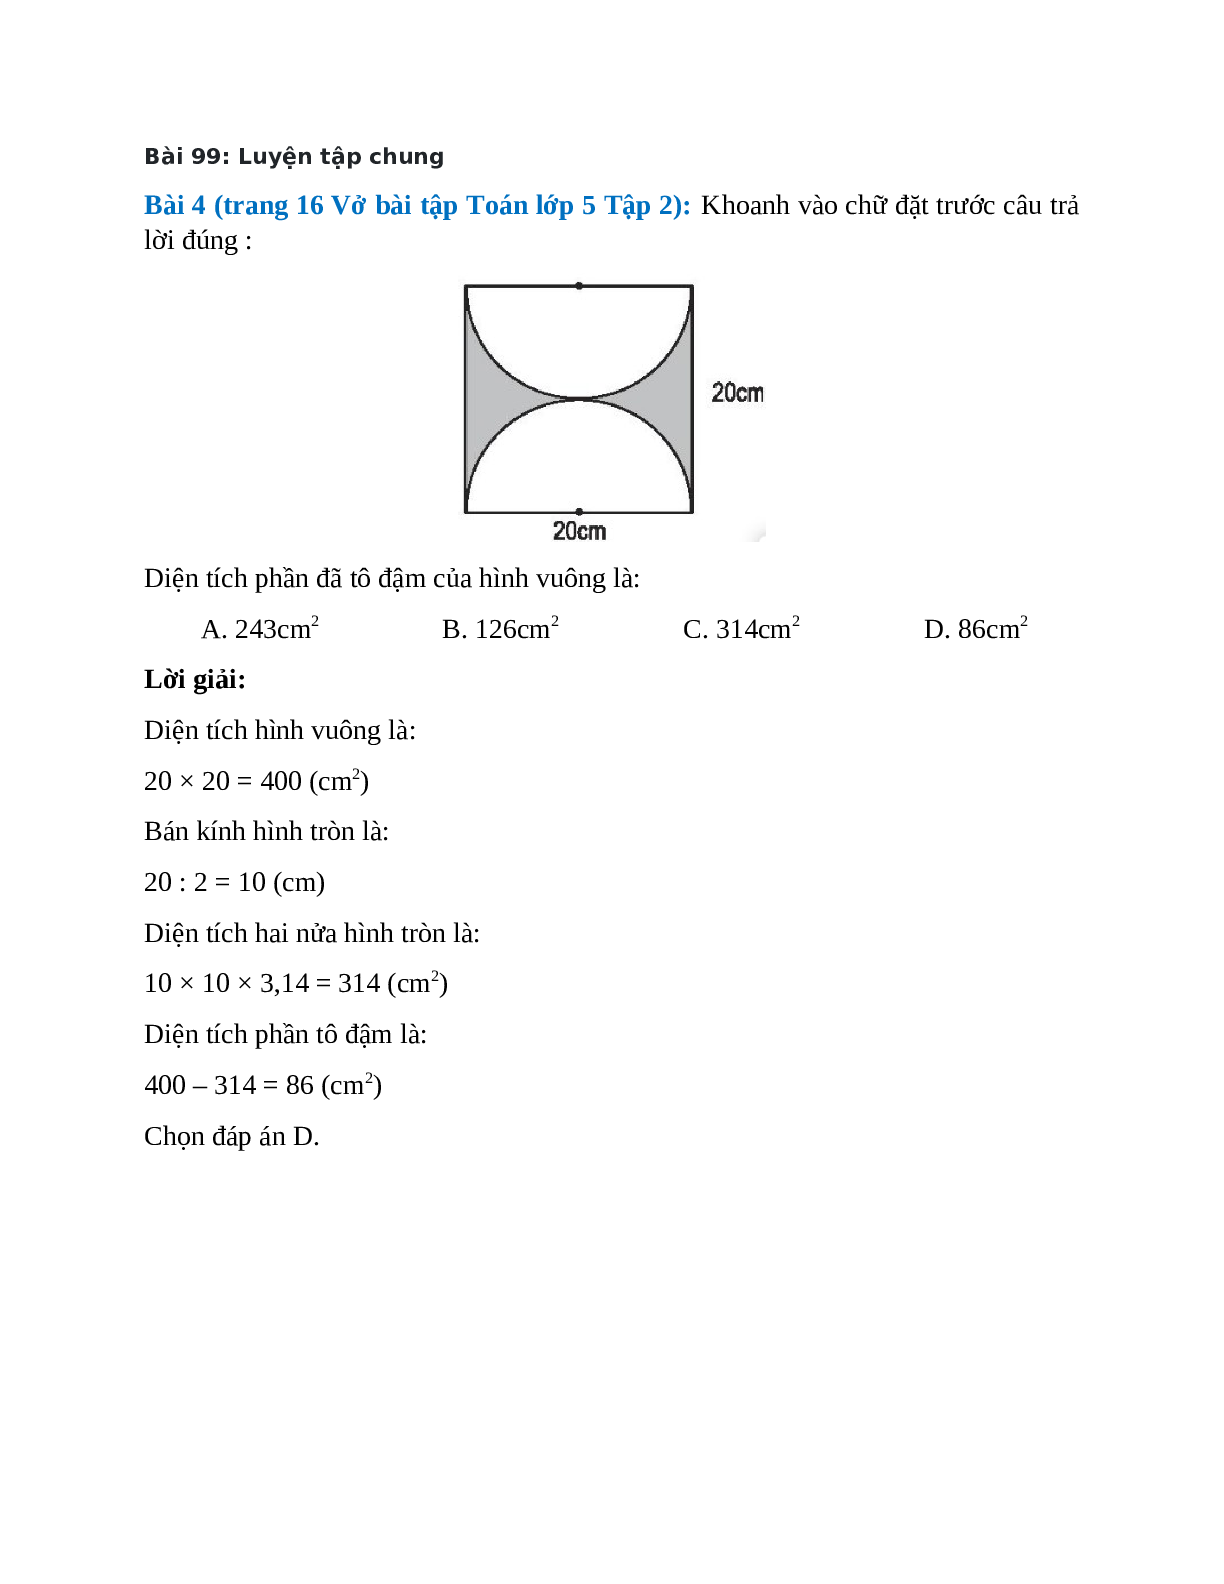 Khoanh vào chữ đặt trước câu trả lời đúng: Diện tích phần đã tô đậm của hình vuông (trang 1)